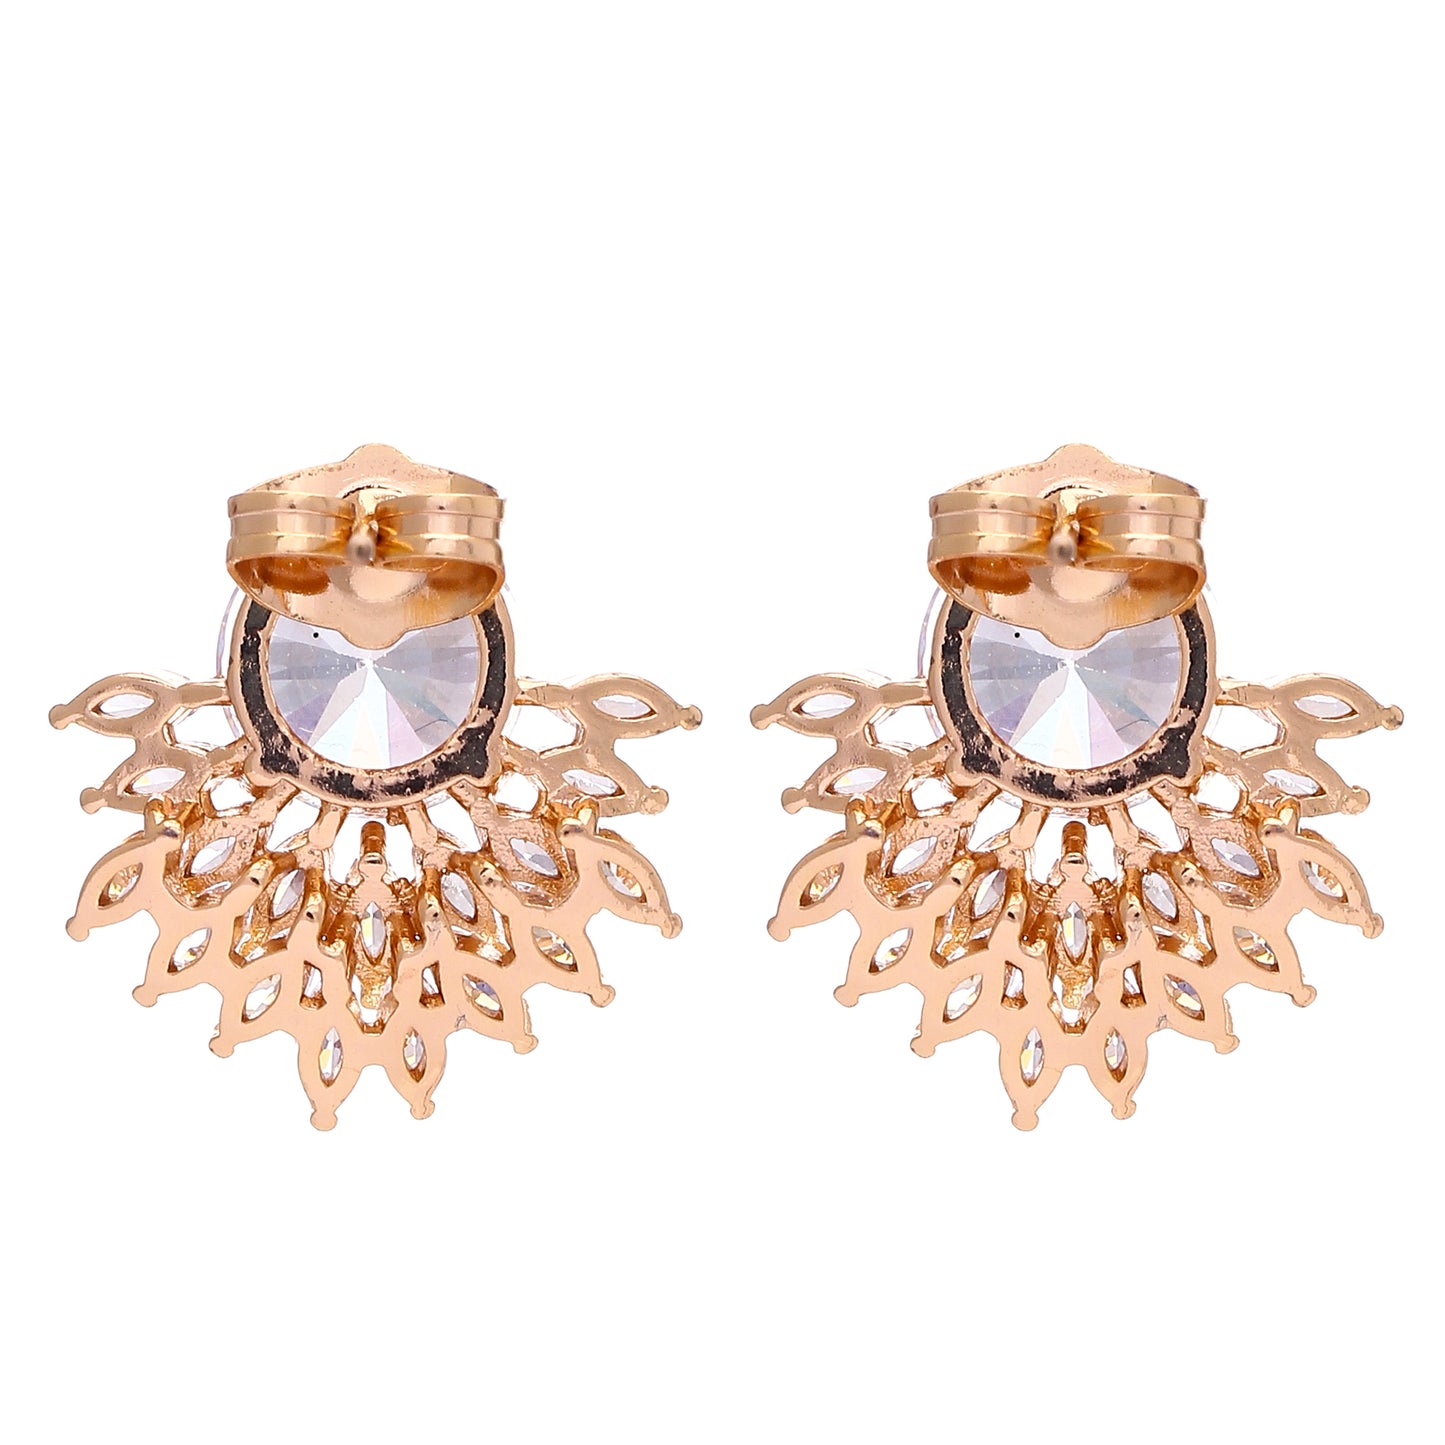 Crystal Petals Earrings